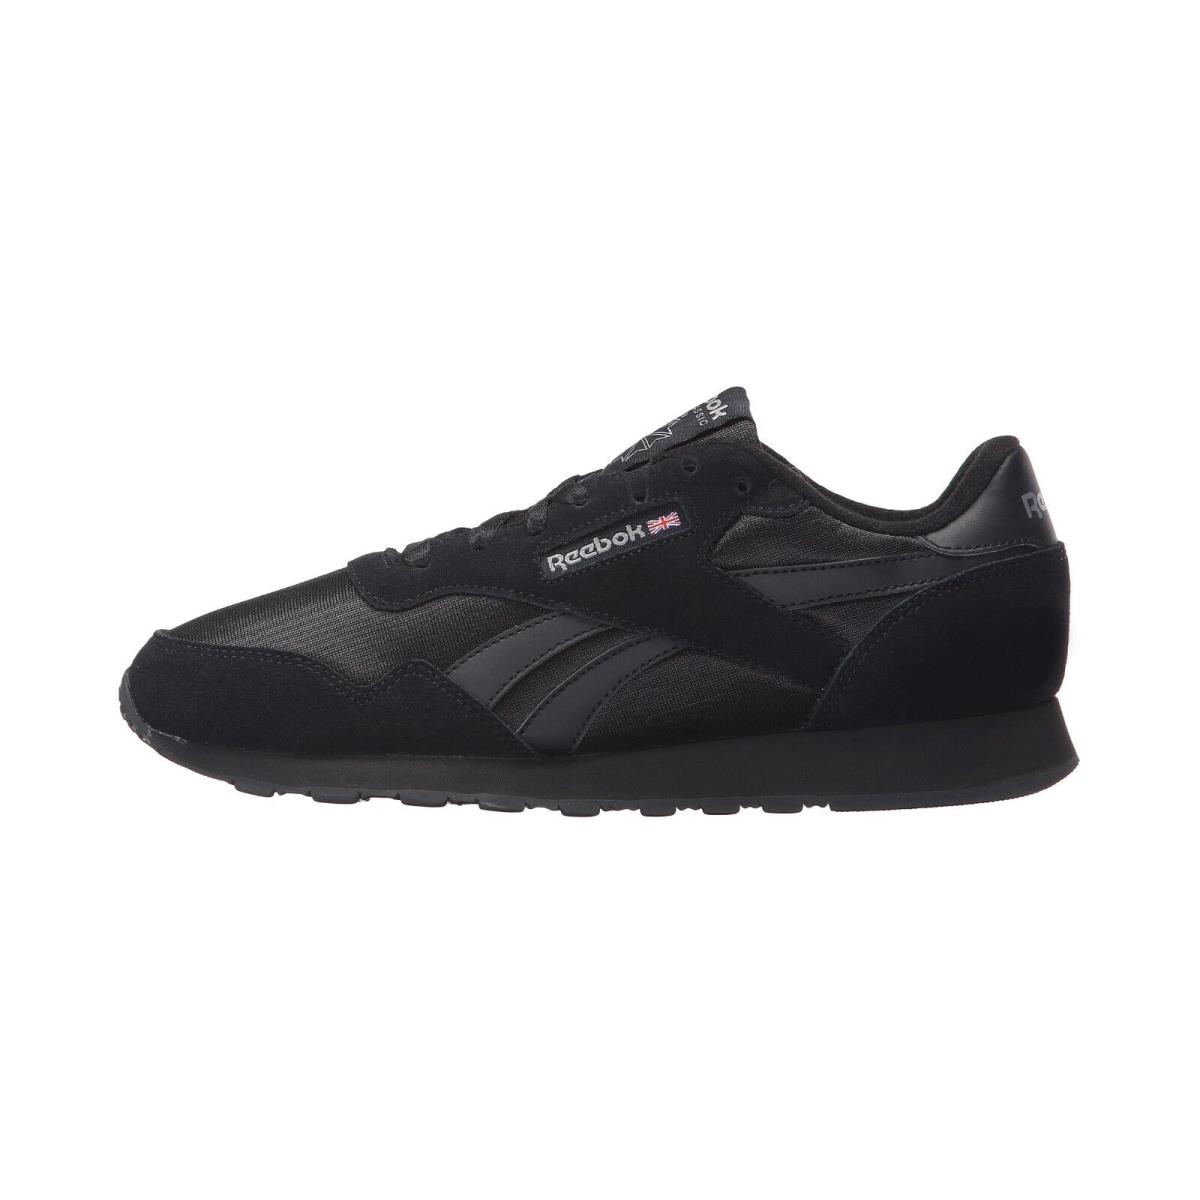 Reebok Royal Nylon Black Black Men Shoes Sneakers Size 14